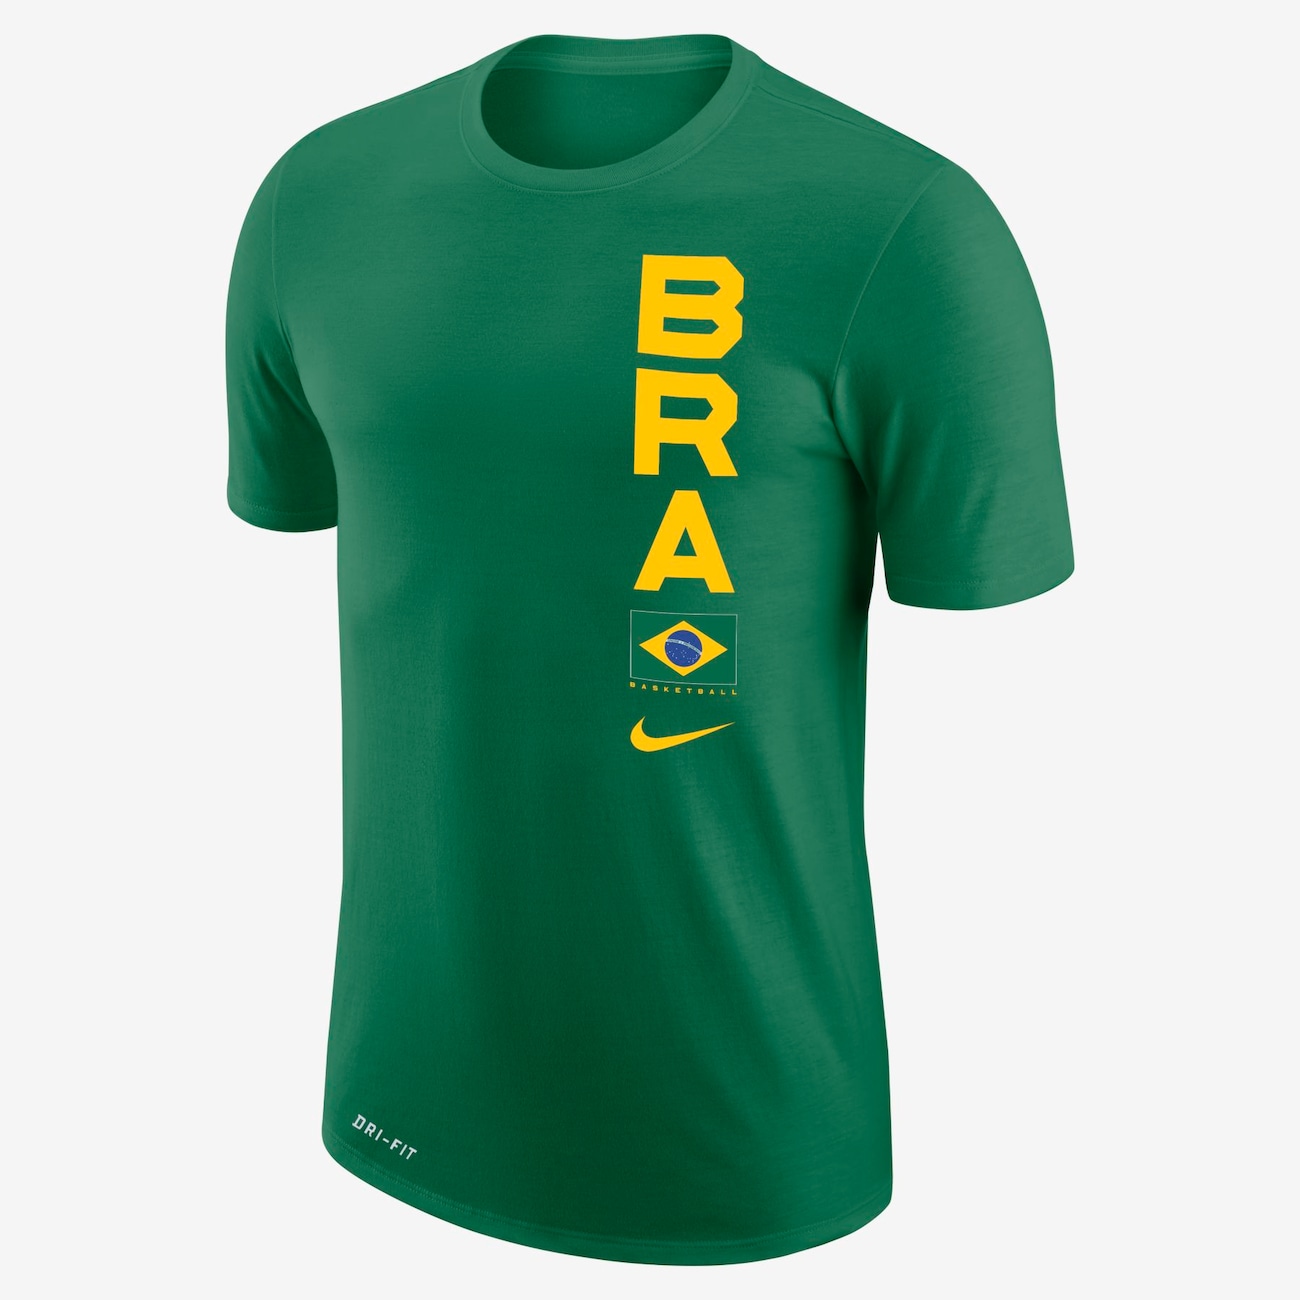 Camiseta Nike SB Brasil Ring Olímpico